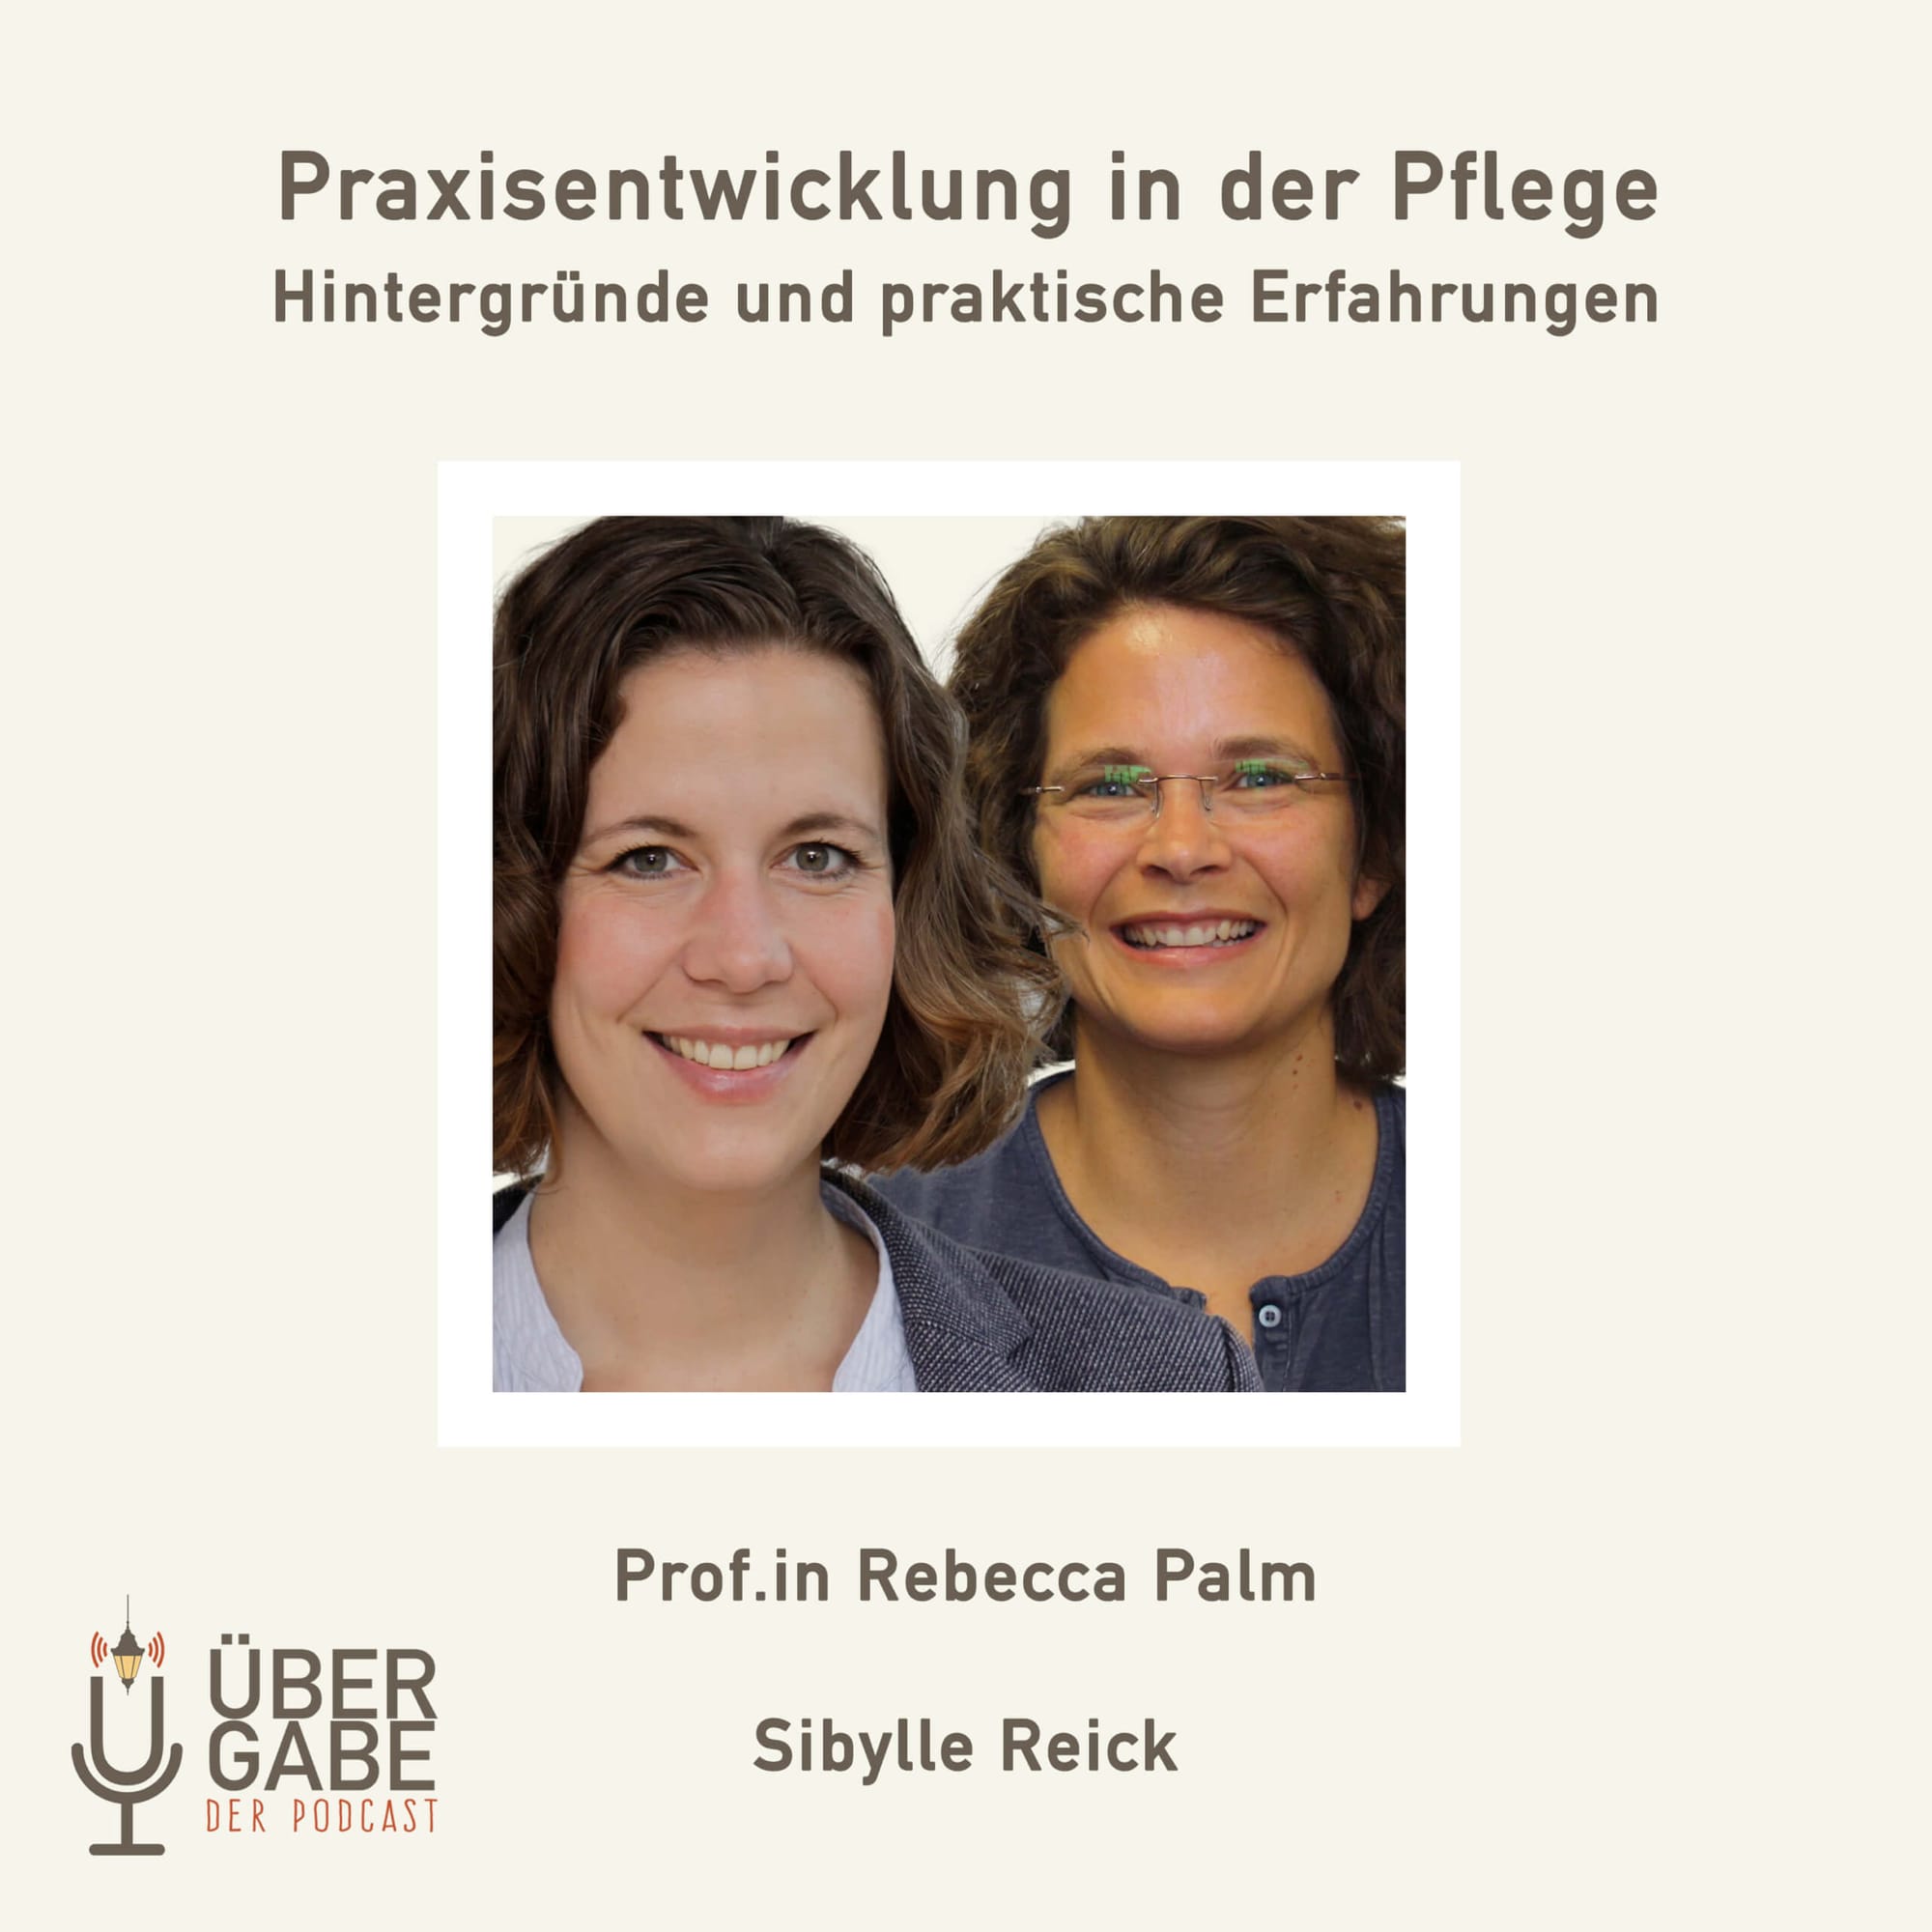 ÜG072 - Praxisentwicklung in der Pflege (Prof.in Rebecca Palm & Sibylle Reick)